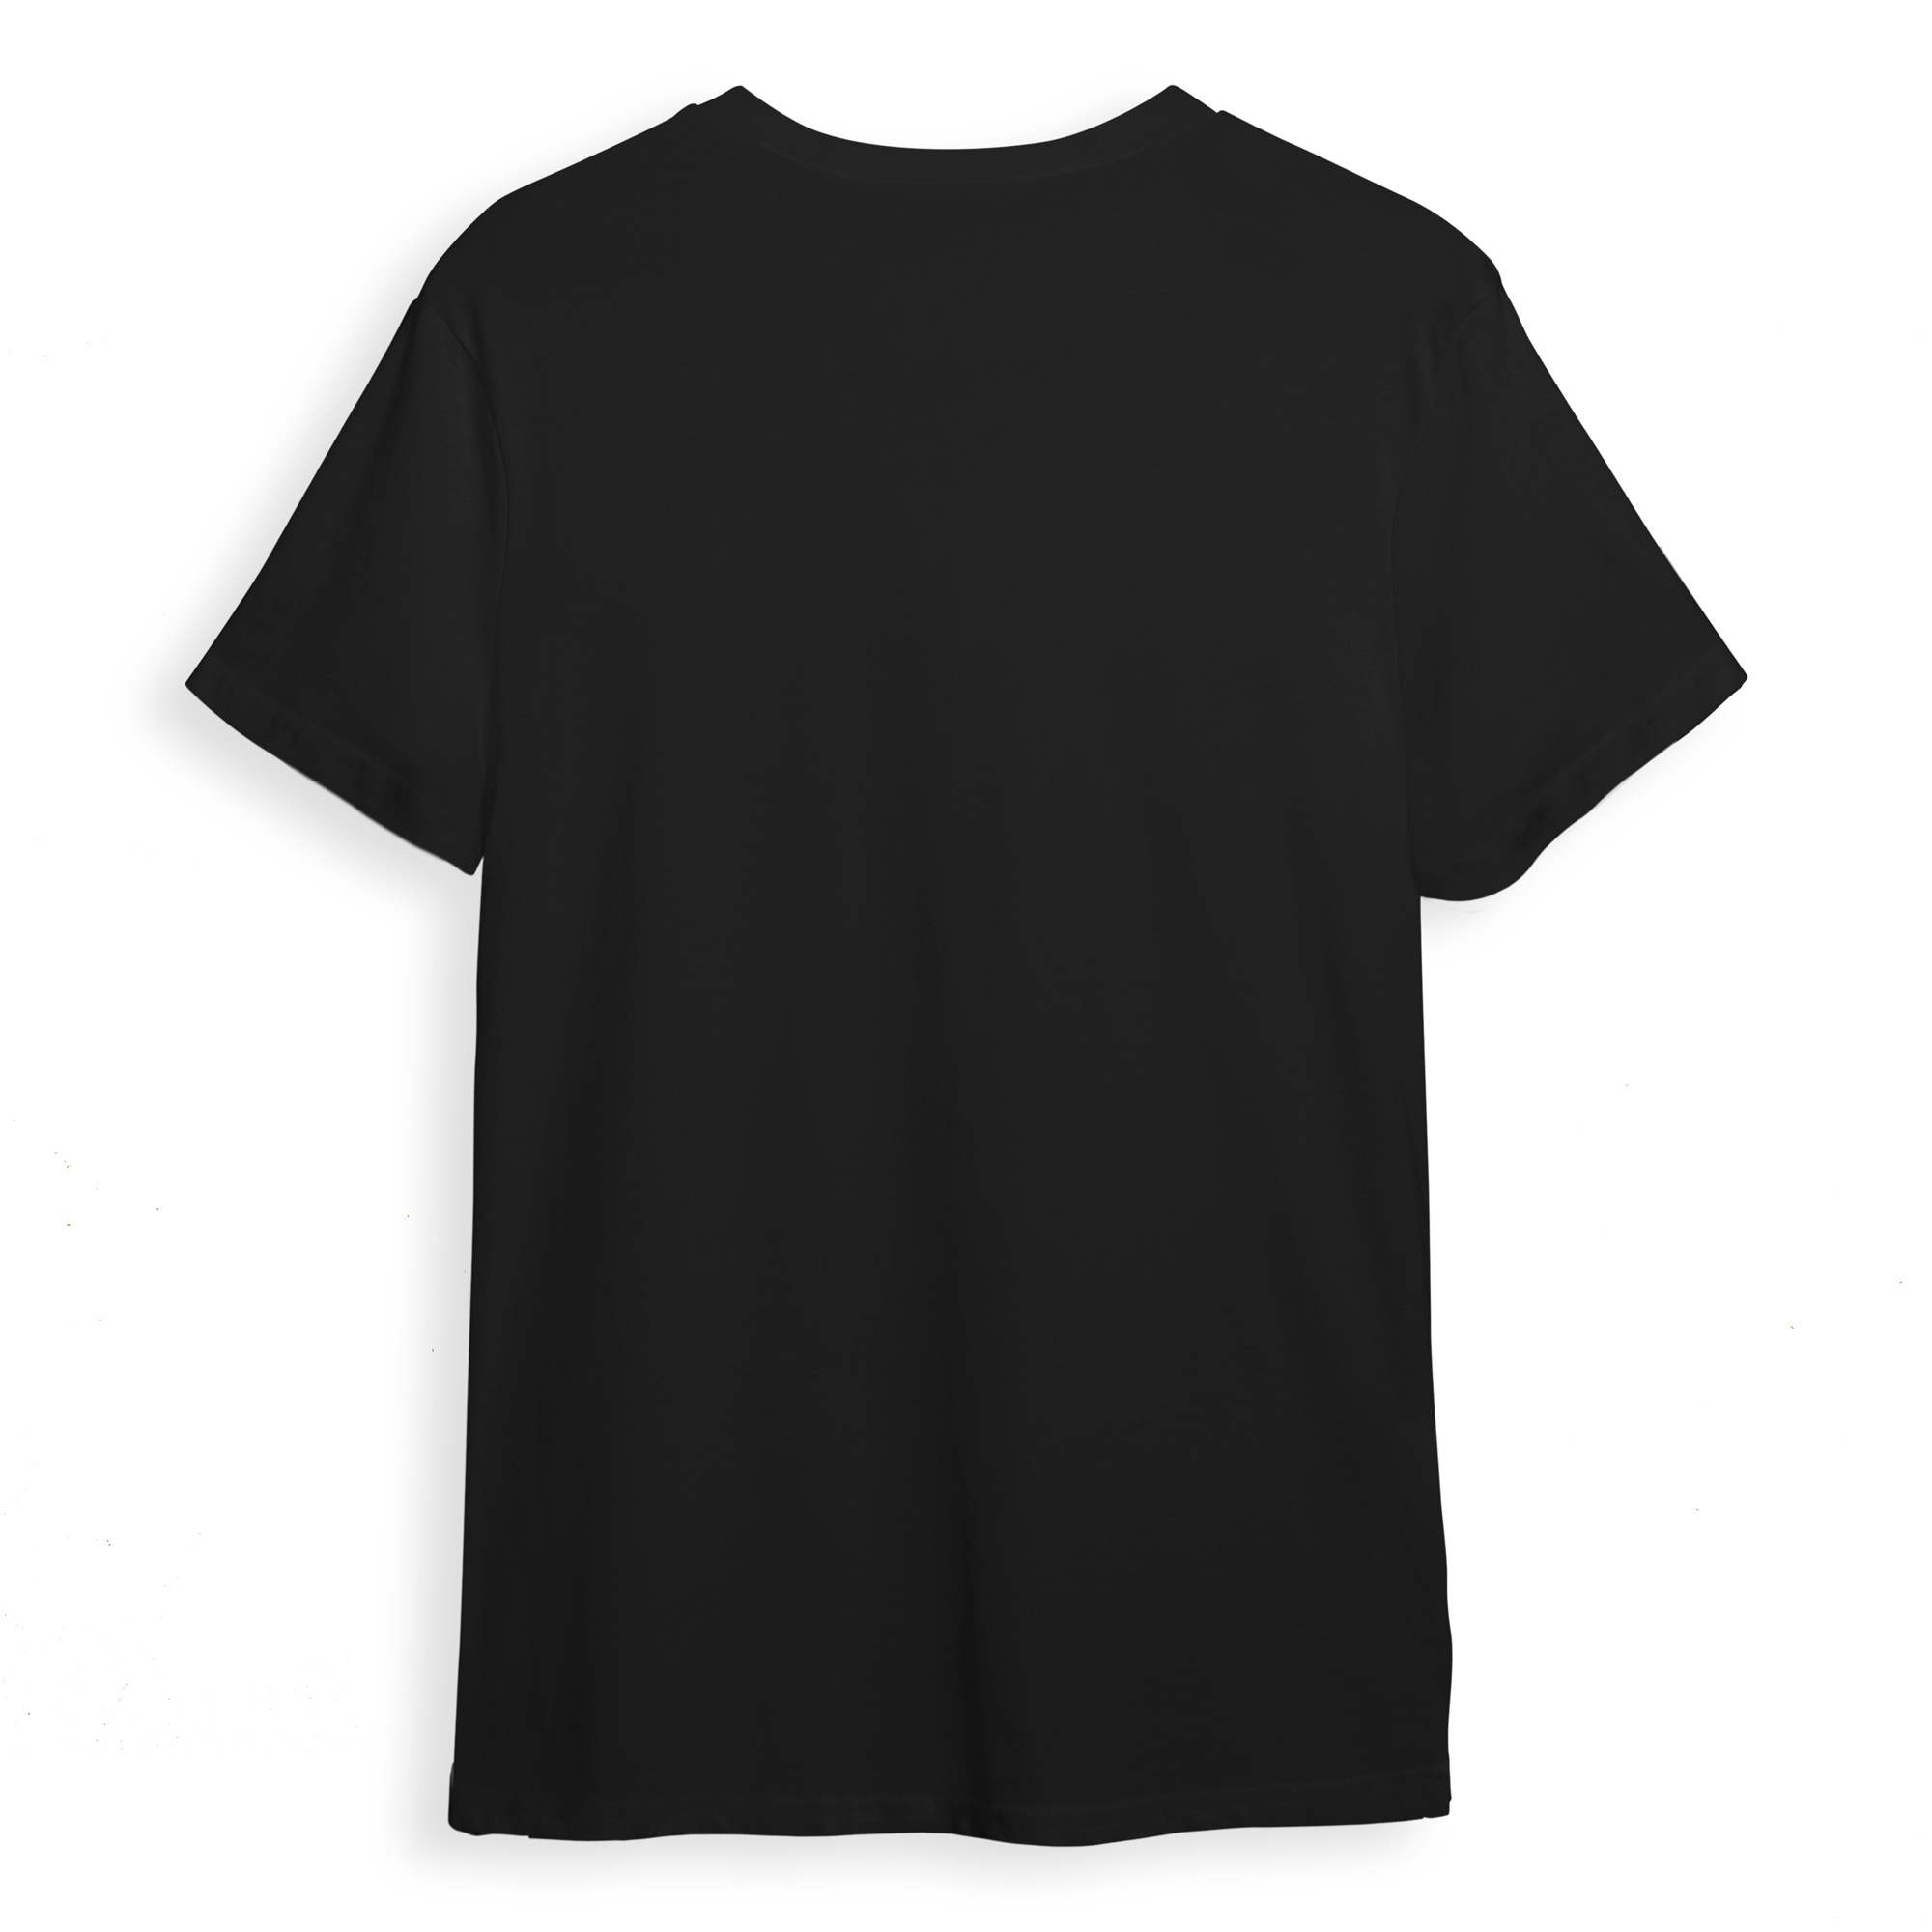 تی شرت آستین کوتاه مردانه مدل لوگو ماشین کد 0693 رنگ مشکی